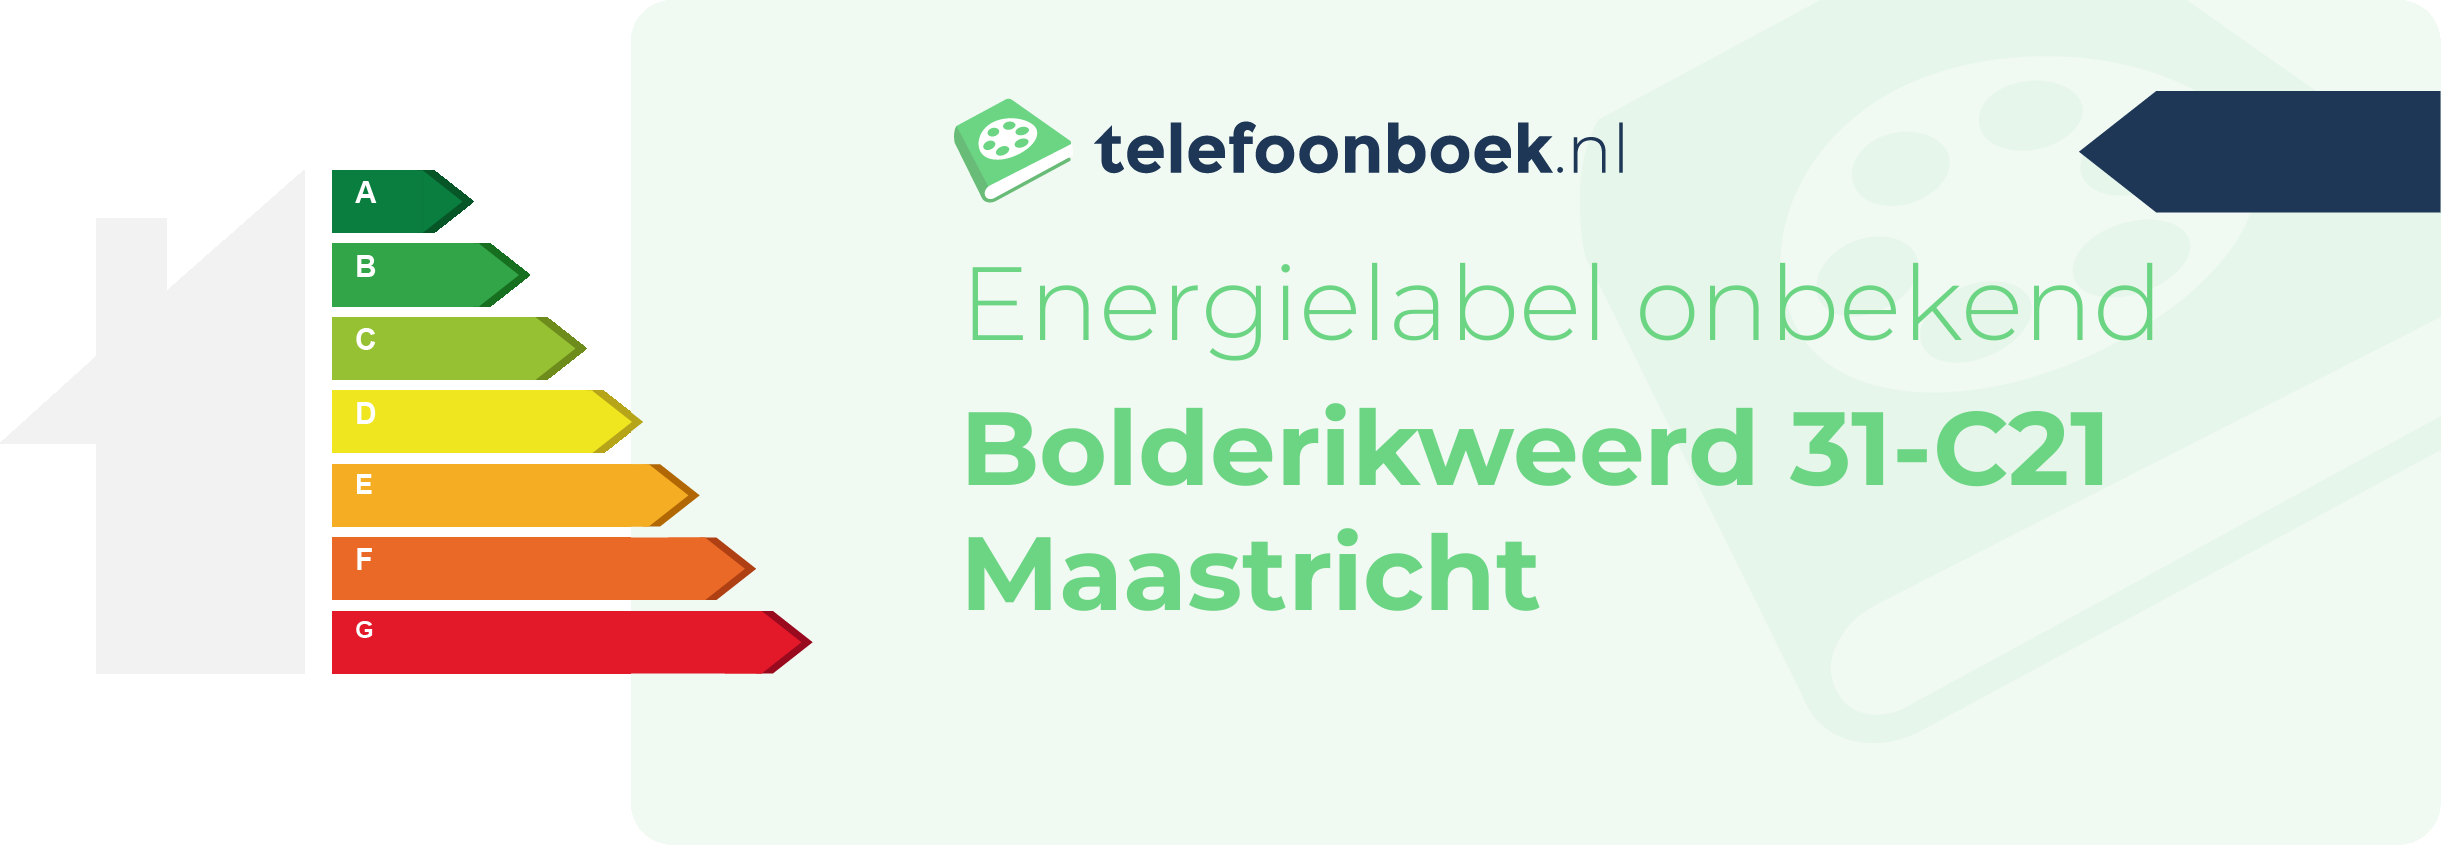 Energielabel Bolderikweerd 31-C21 Maastricht